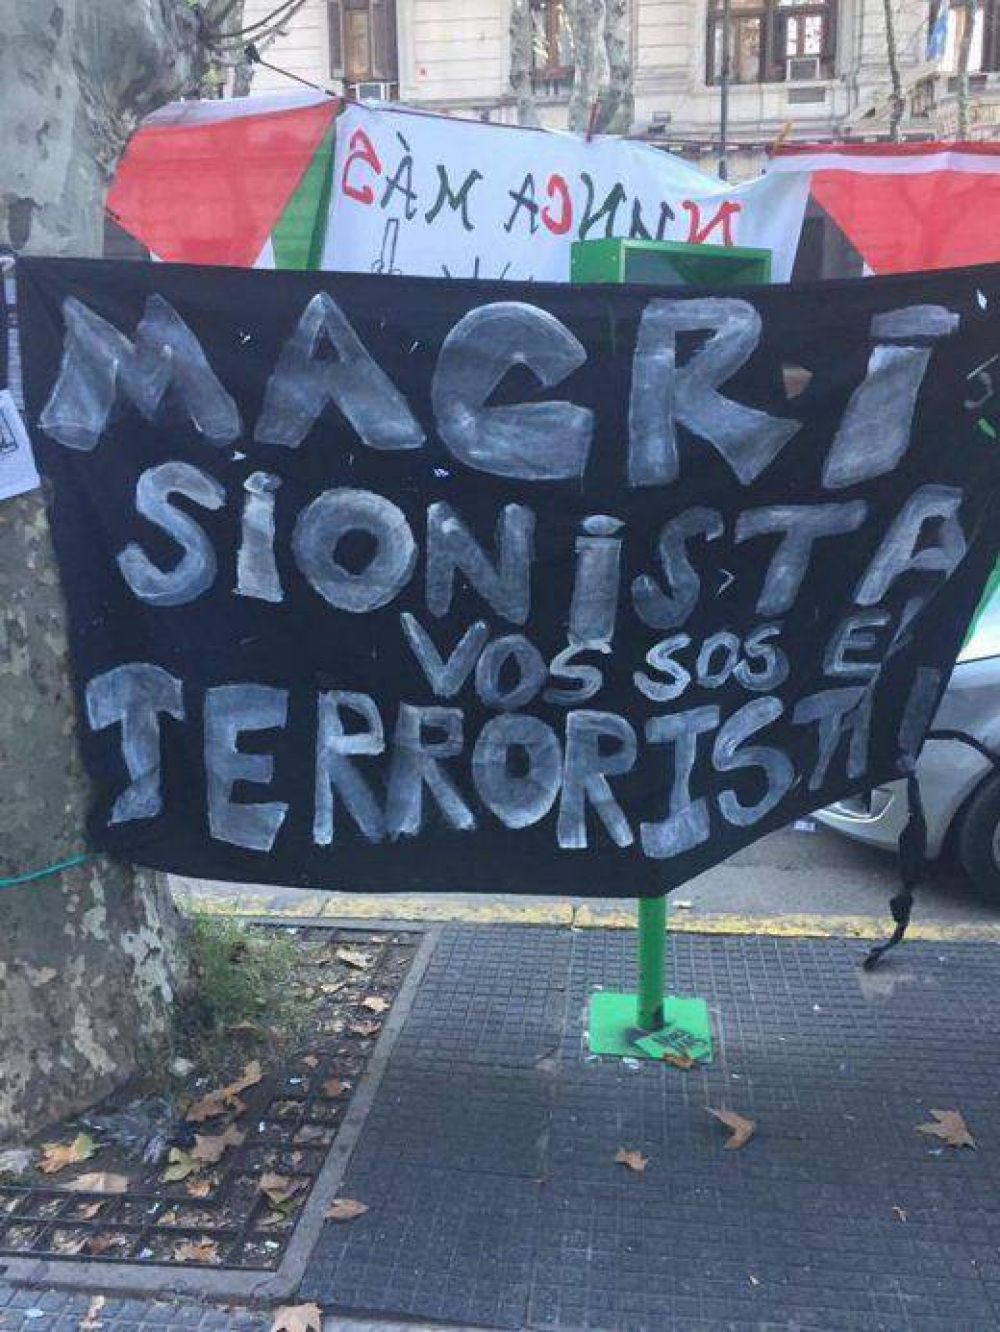 Macri, sionista, vos sos el terrorista, el cartel antisemita en la marcha en reclamo del fallo de la corte por el 21